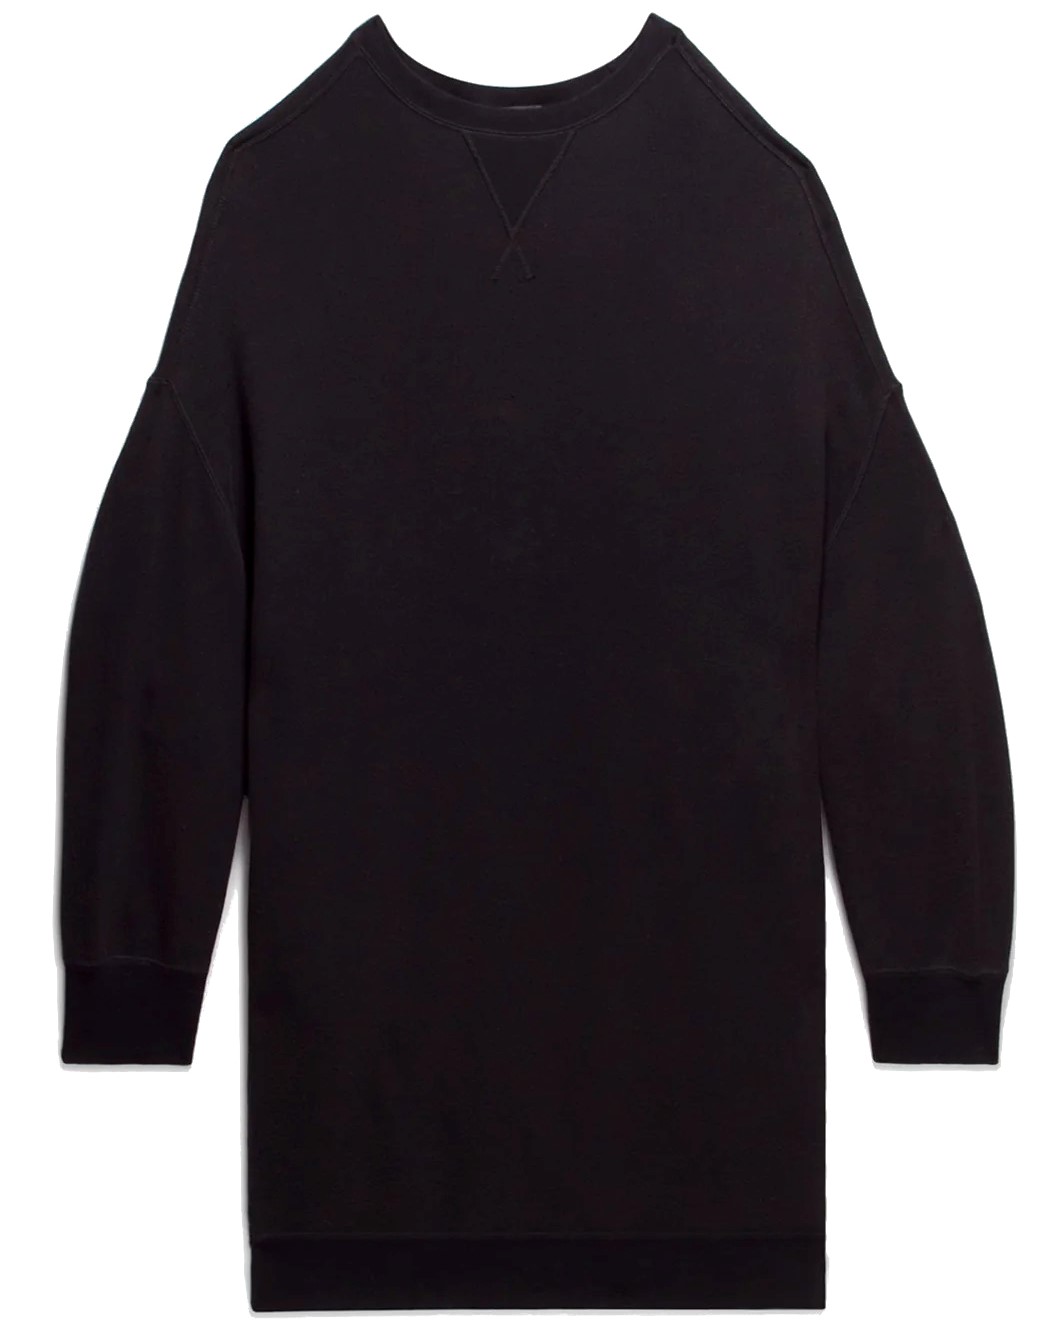 R13 Grunge Oversize Sweatshirt in Washed Black M